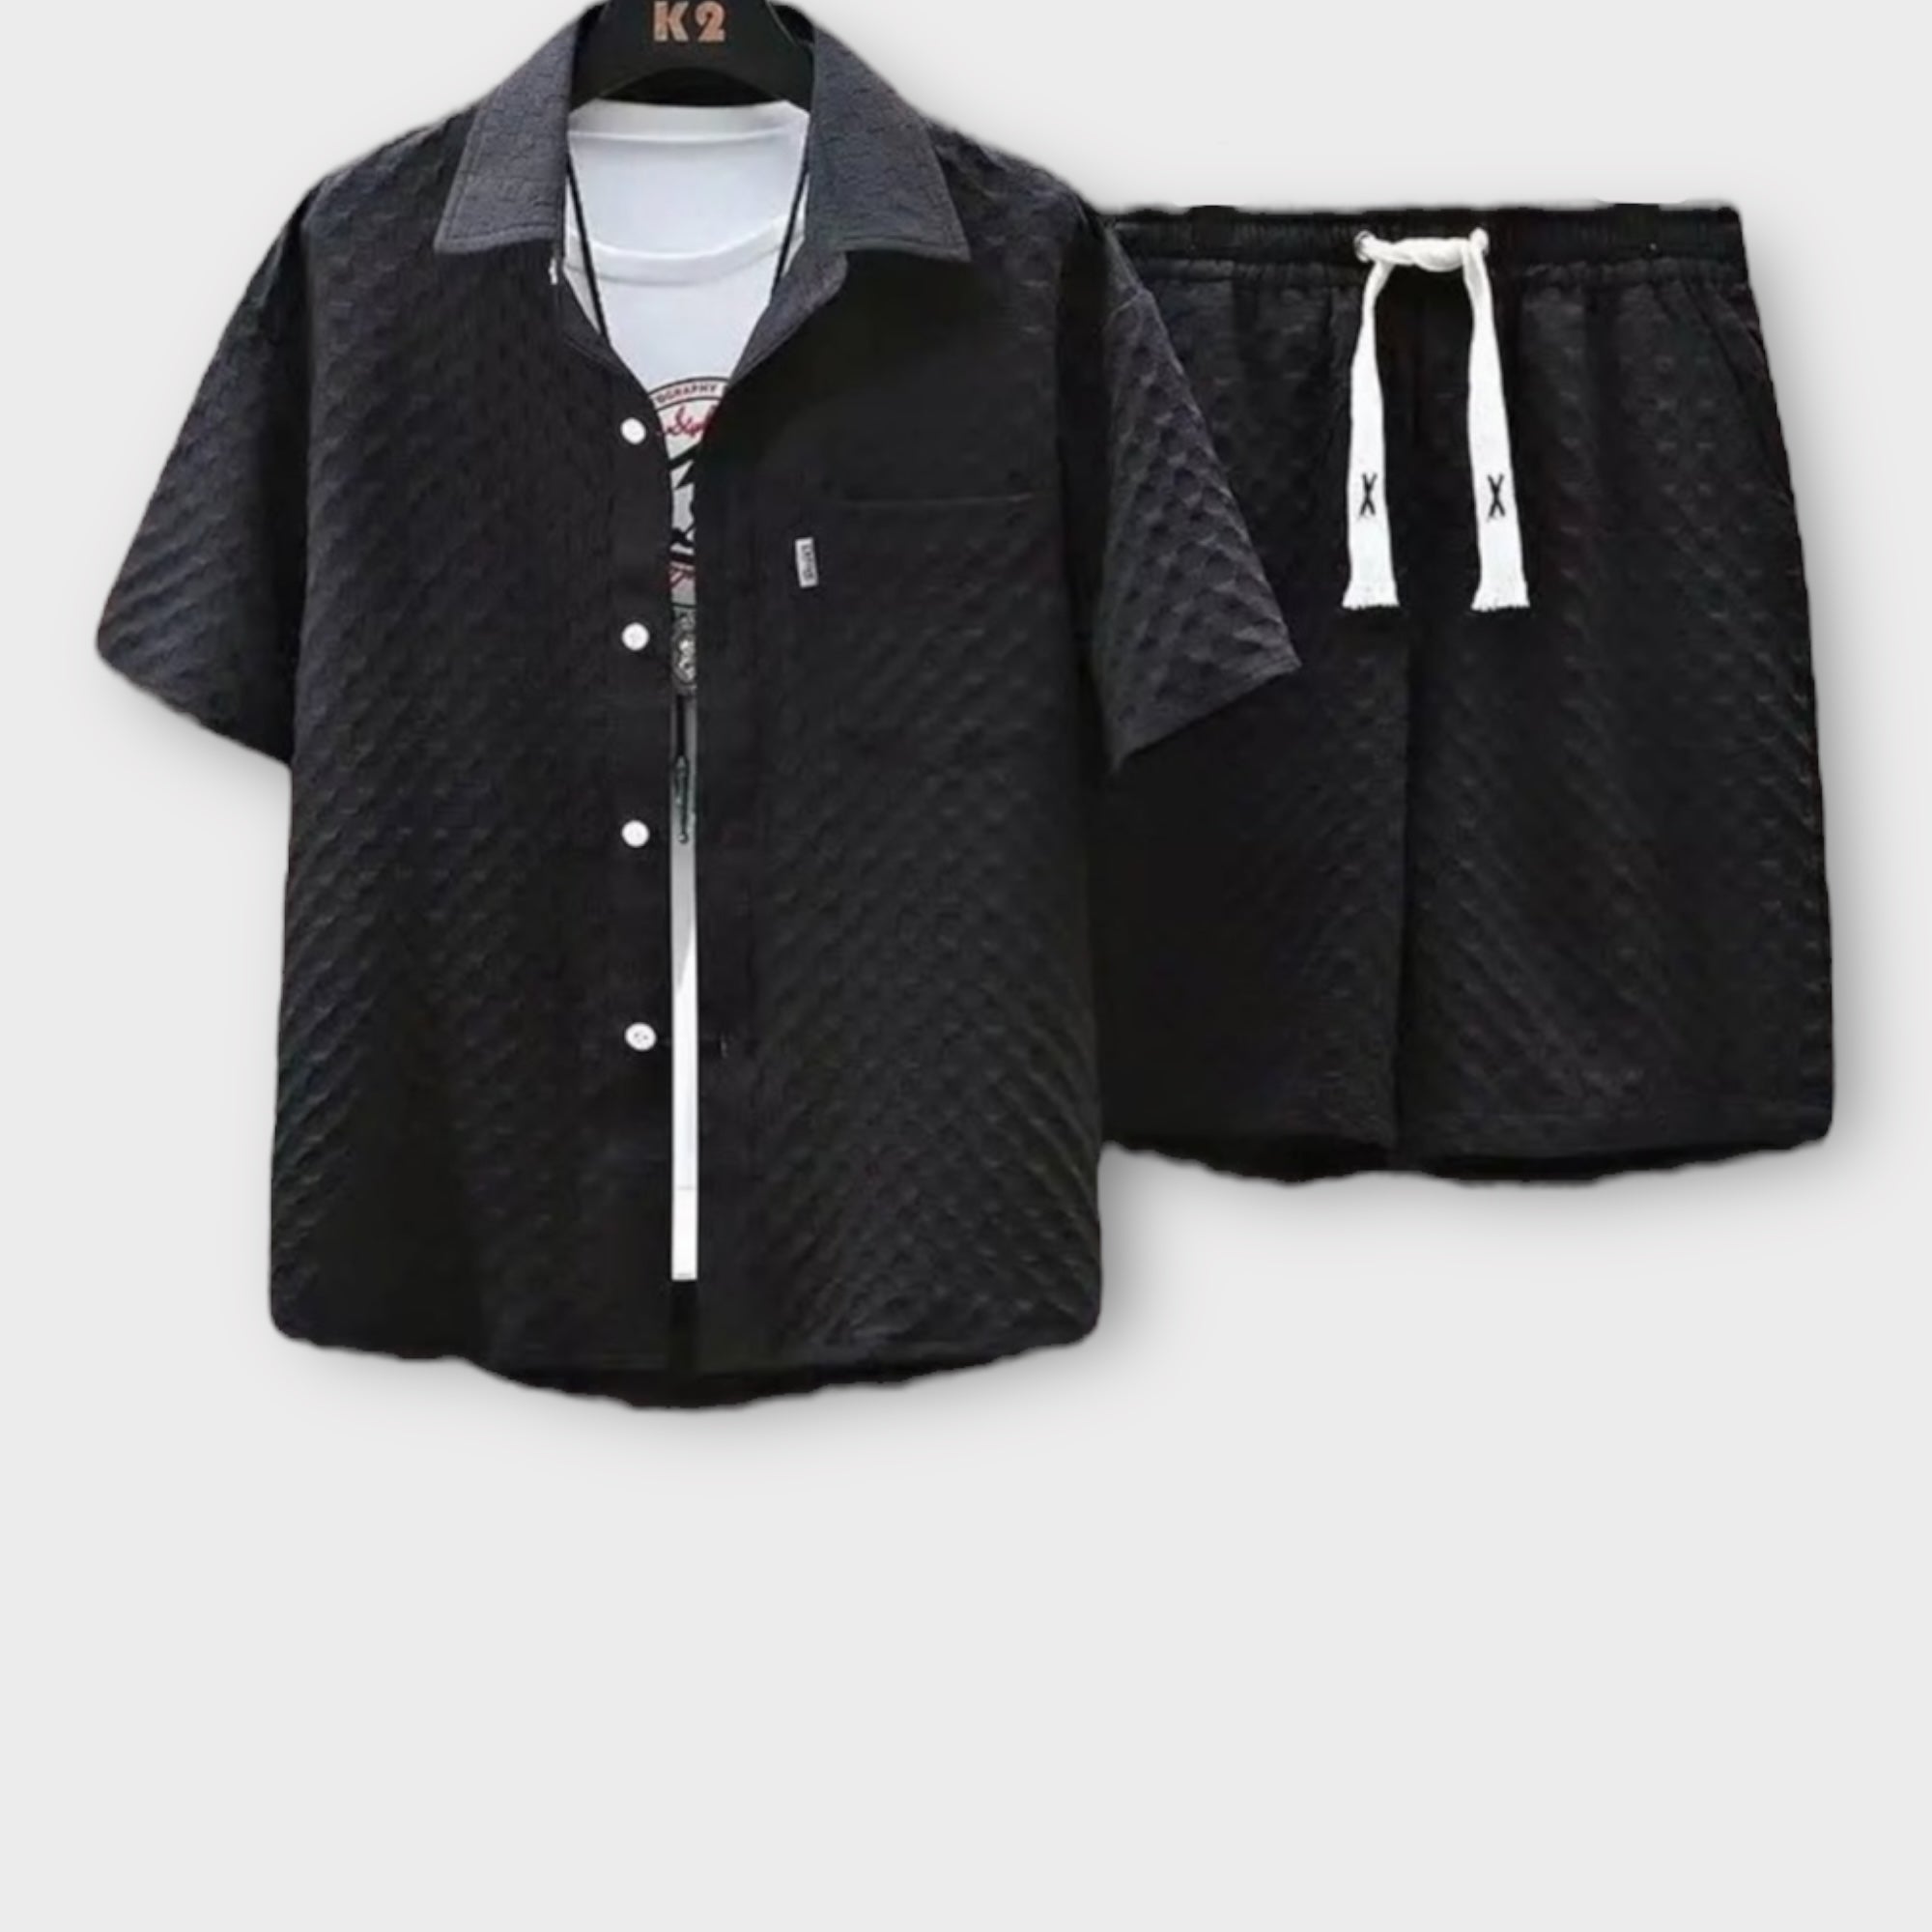 'ATGO' Casual shirt and pant set for men